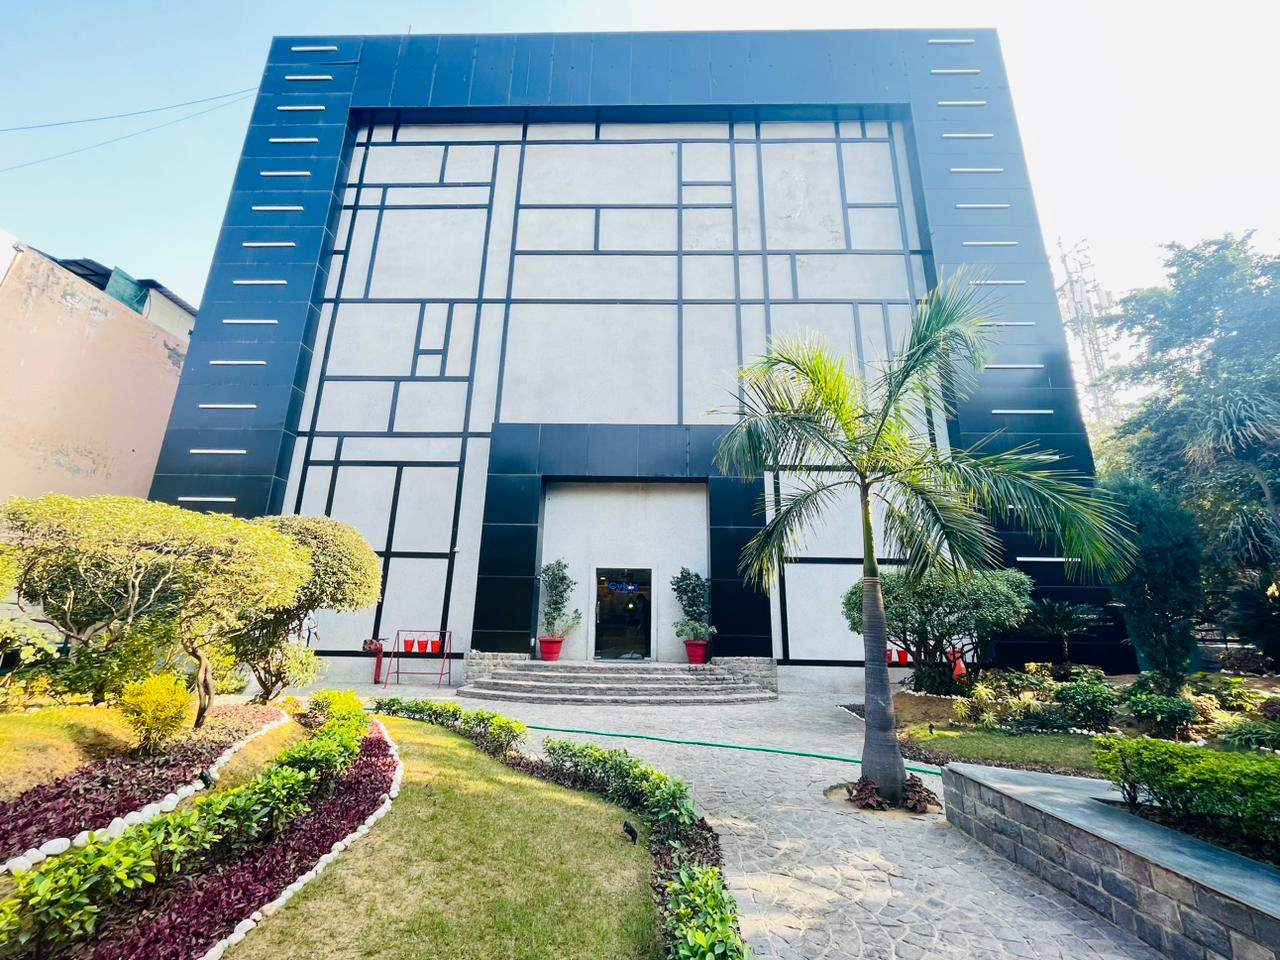 Rent Office/ Shop, 5000 sq ft carpet area, Furnished for rent @Udyog Vihar Phase 4